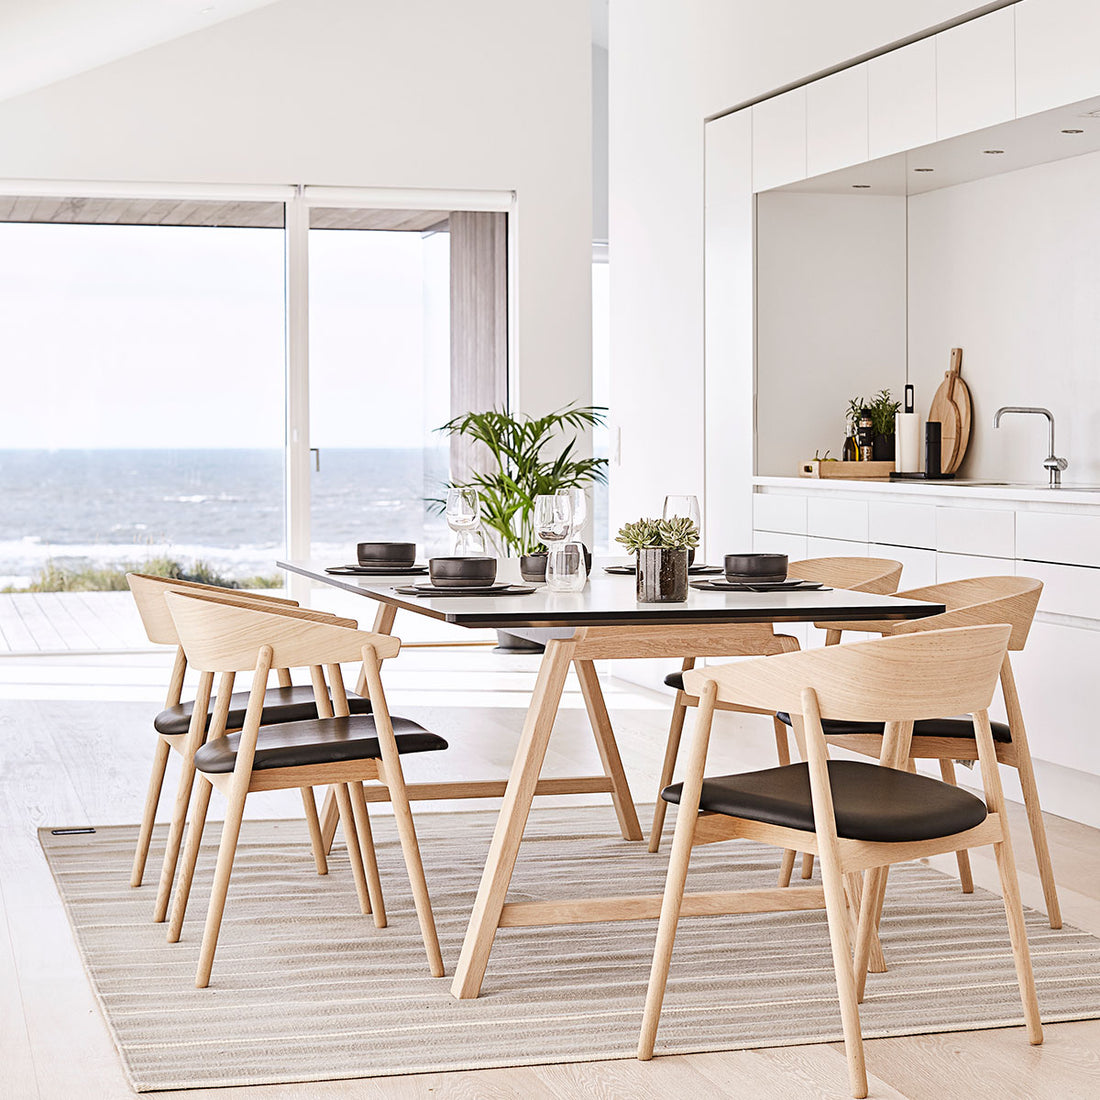 Andersen Furniture T1 udtræksbord i hvid laminat - understel i eg/hvidpigmenteret mat lak - 88x160xH72,5 - DesignGaragen.dk.